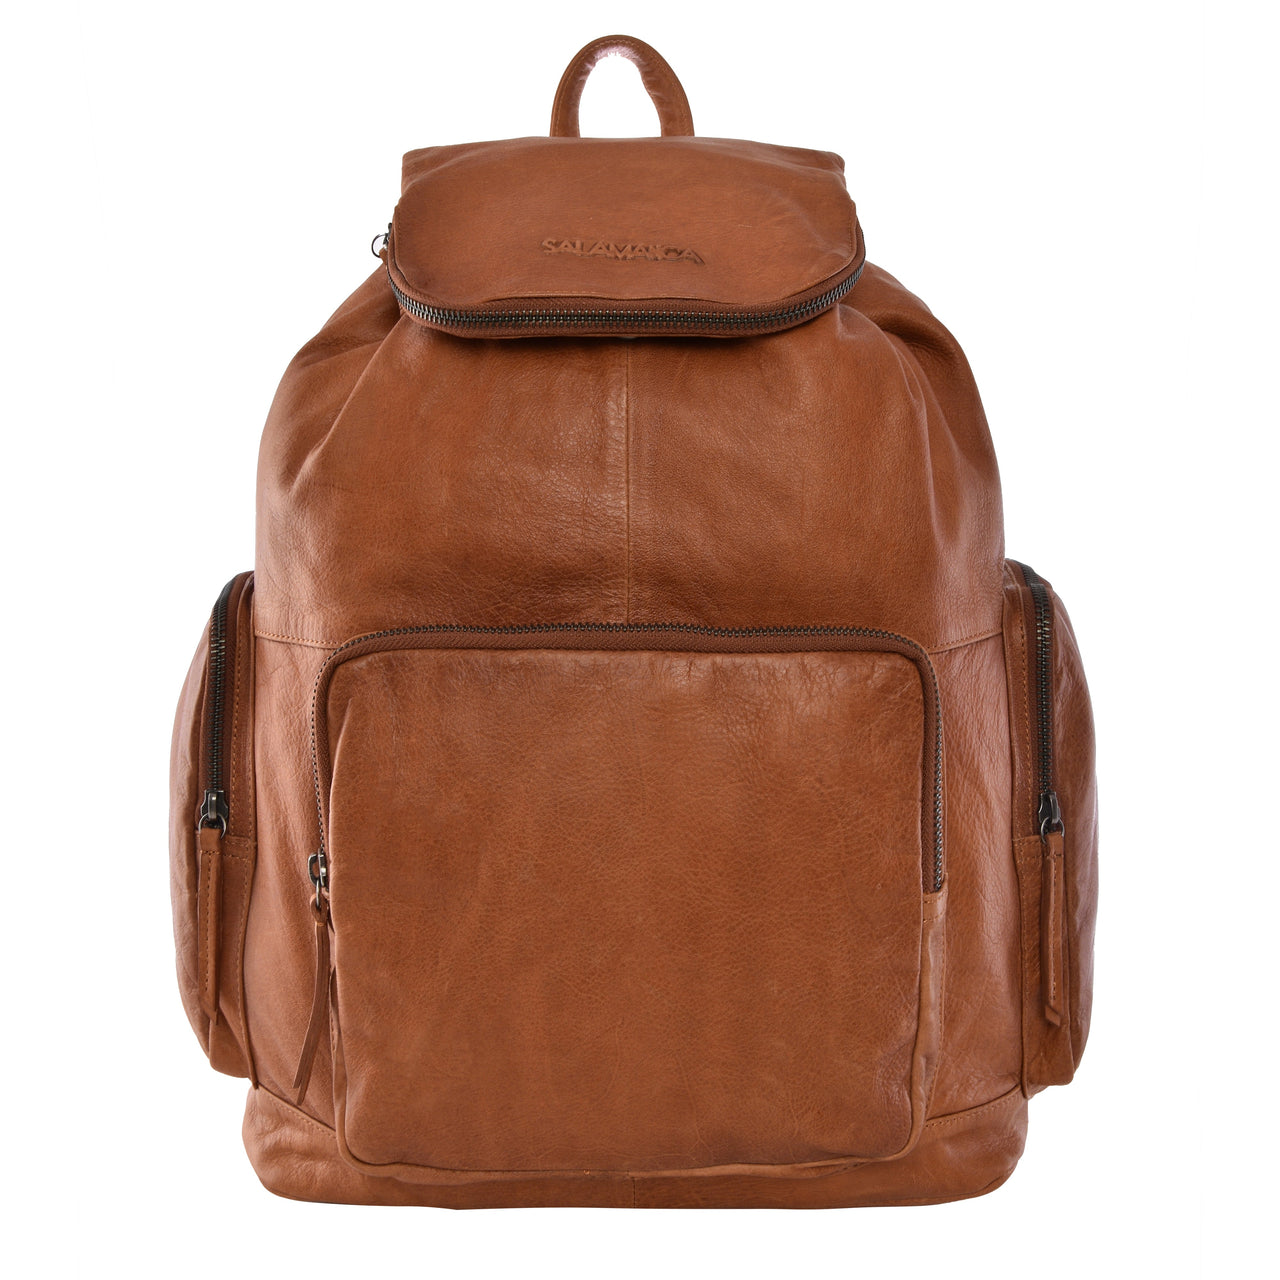 Arnos Backpack - Light Brown - Backpack